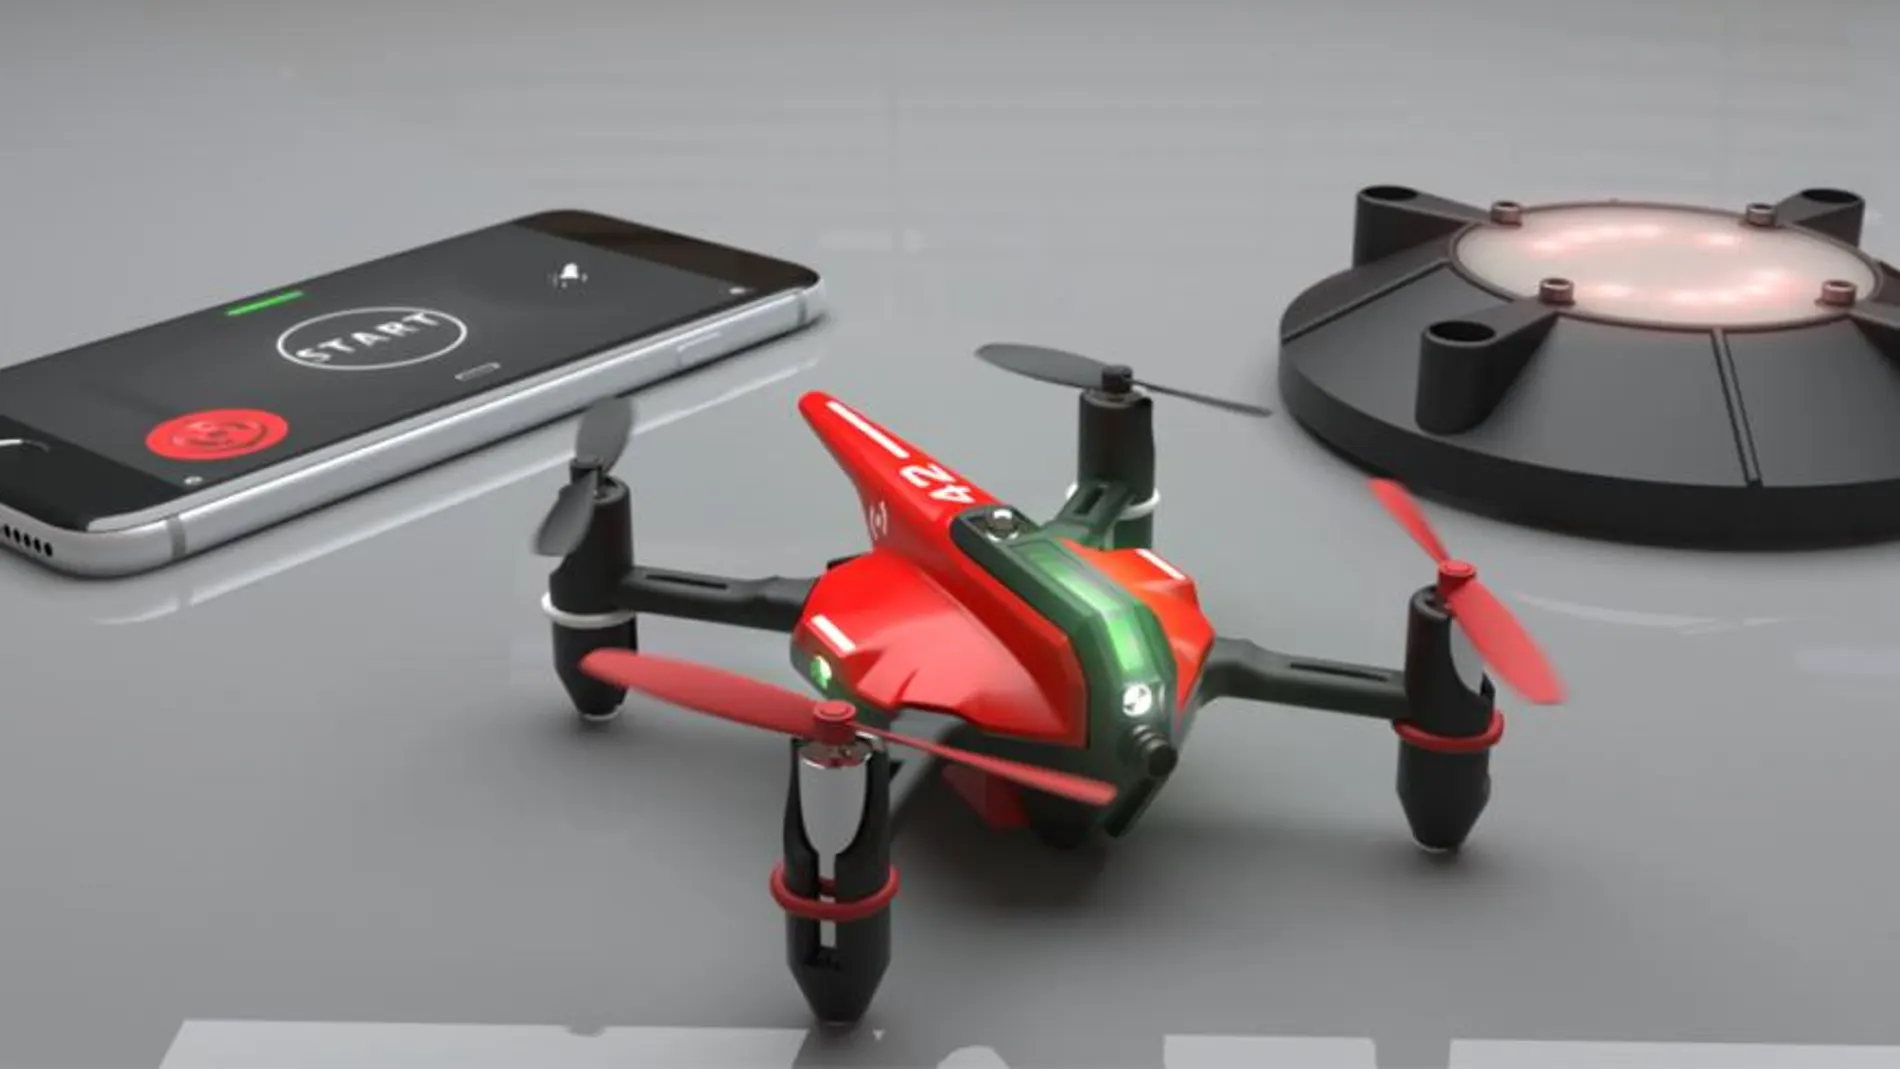 Una de las apuestas más llamativas, la de aplicar los drones a los videojuegos, como hace la empresa Drone n Base